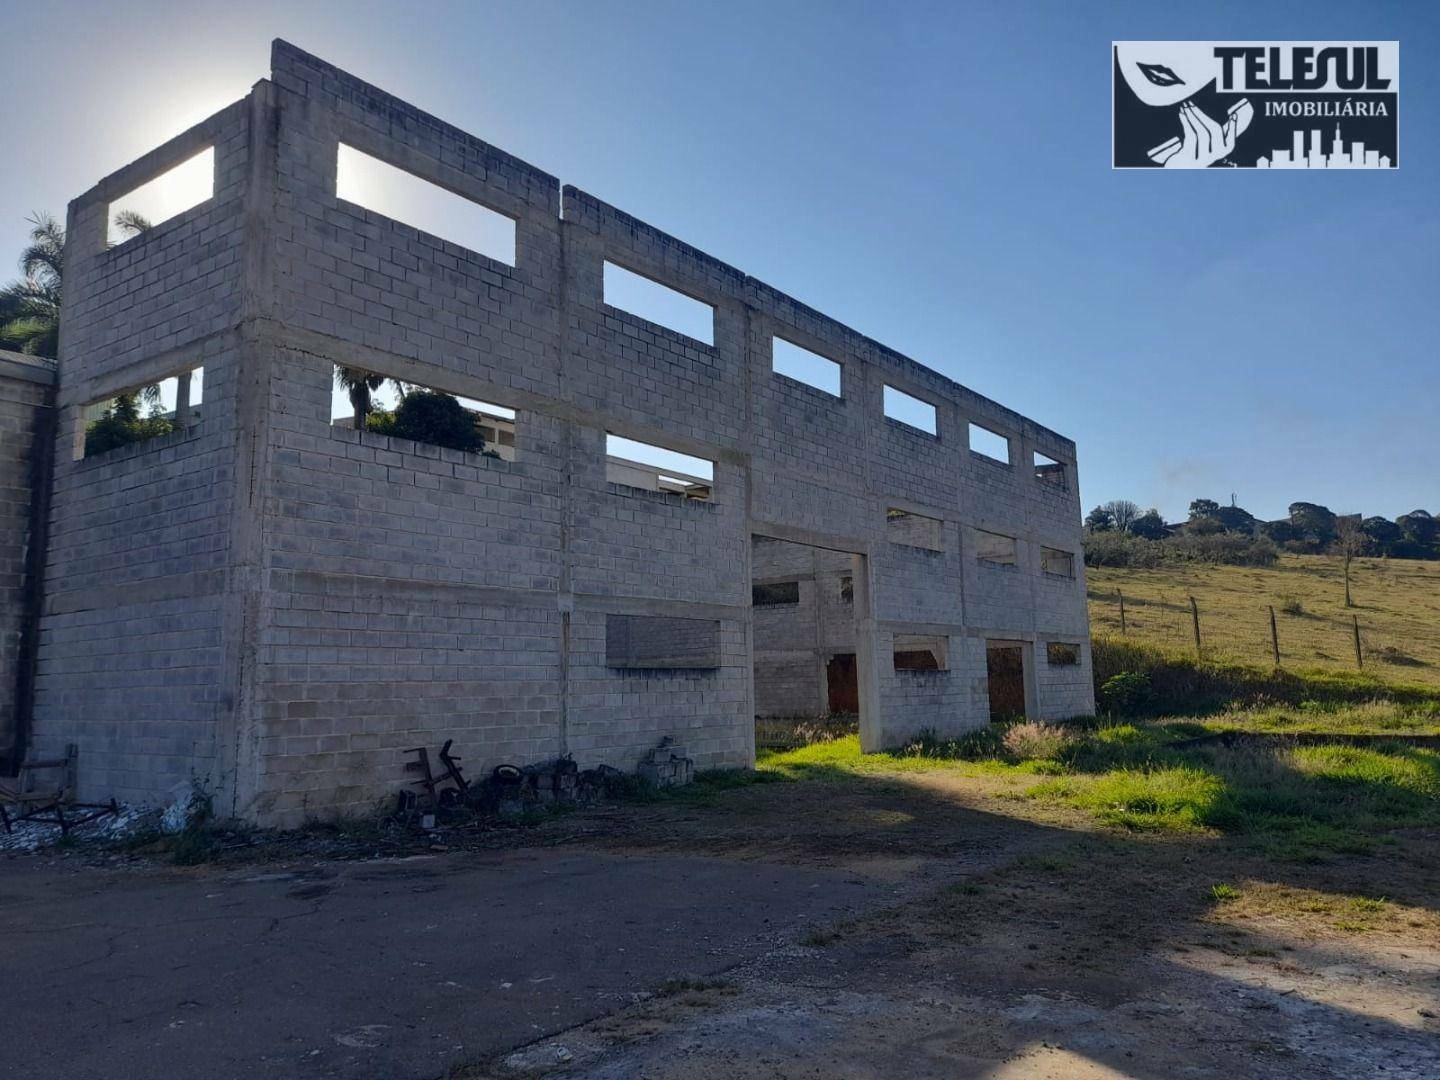 Depósito-Galpão, 7780 m² - Foto 2